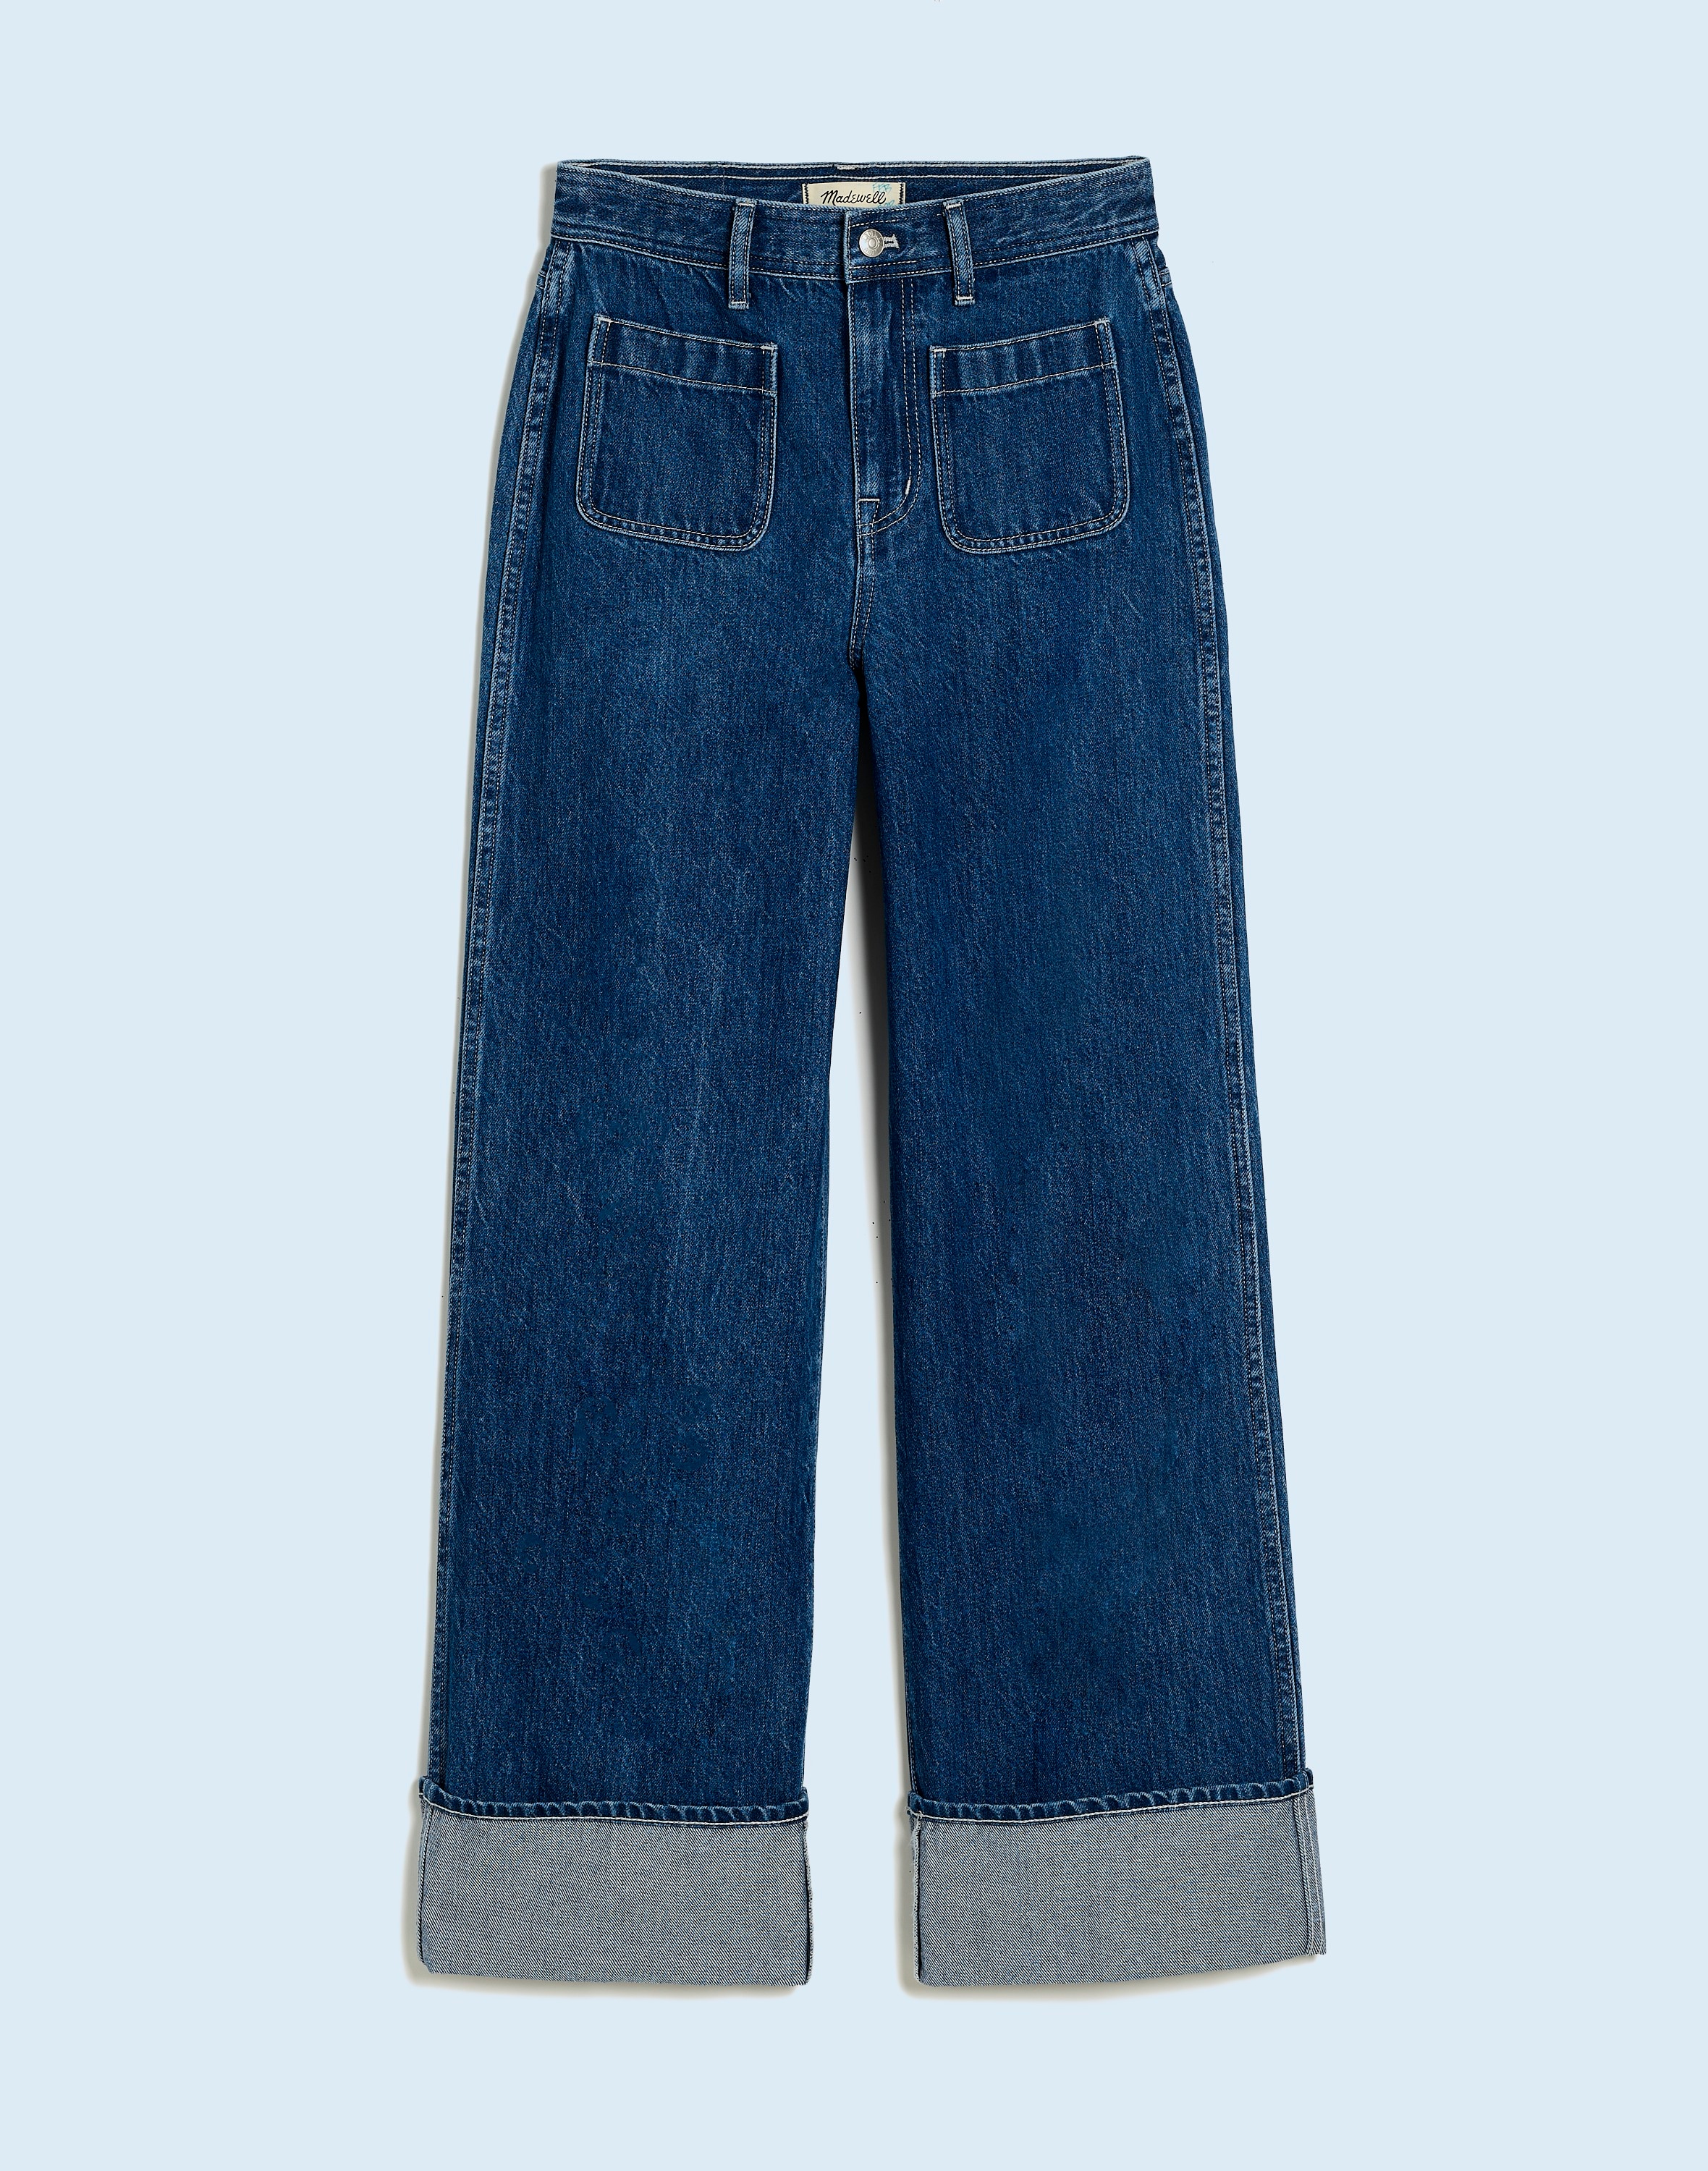 Superwide-Leg Jeans Hewett Wash: Airy Denim Edition